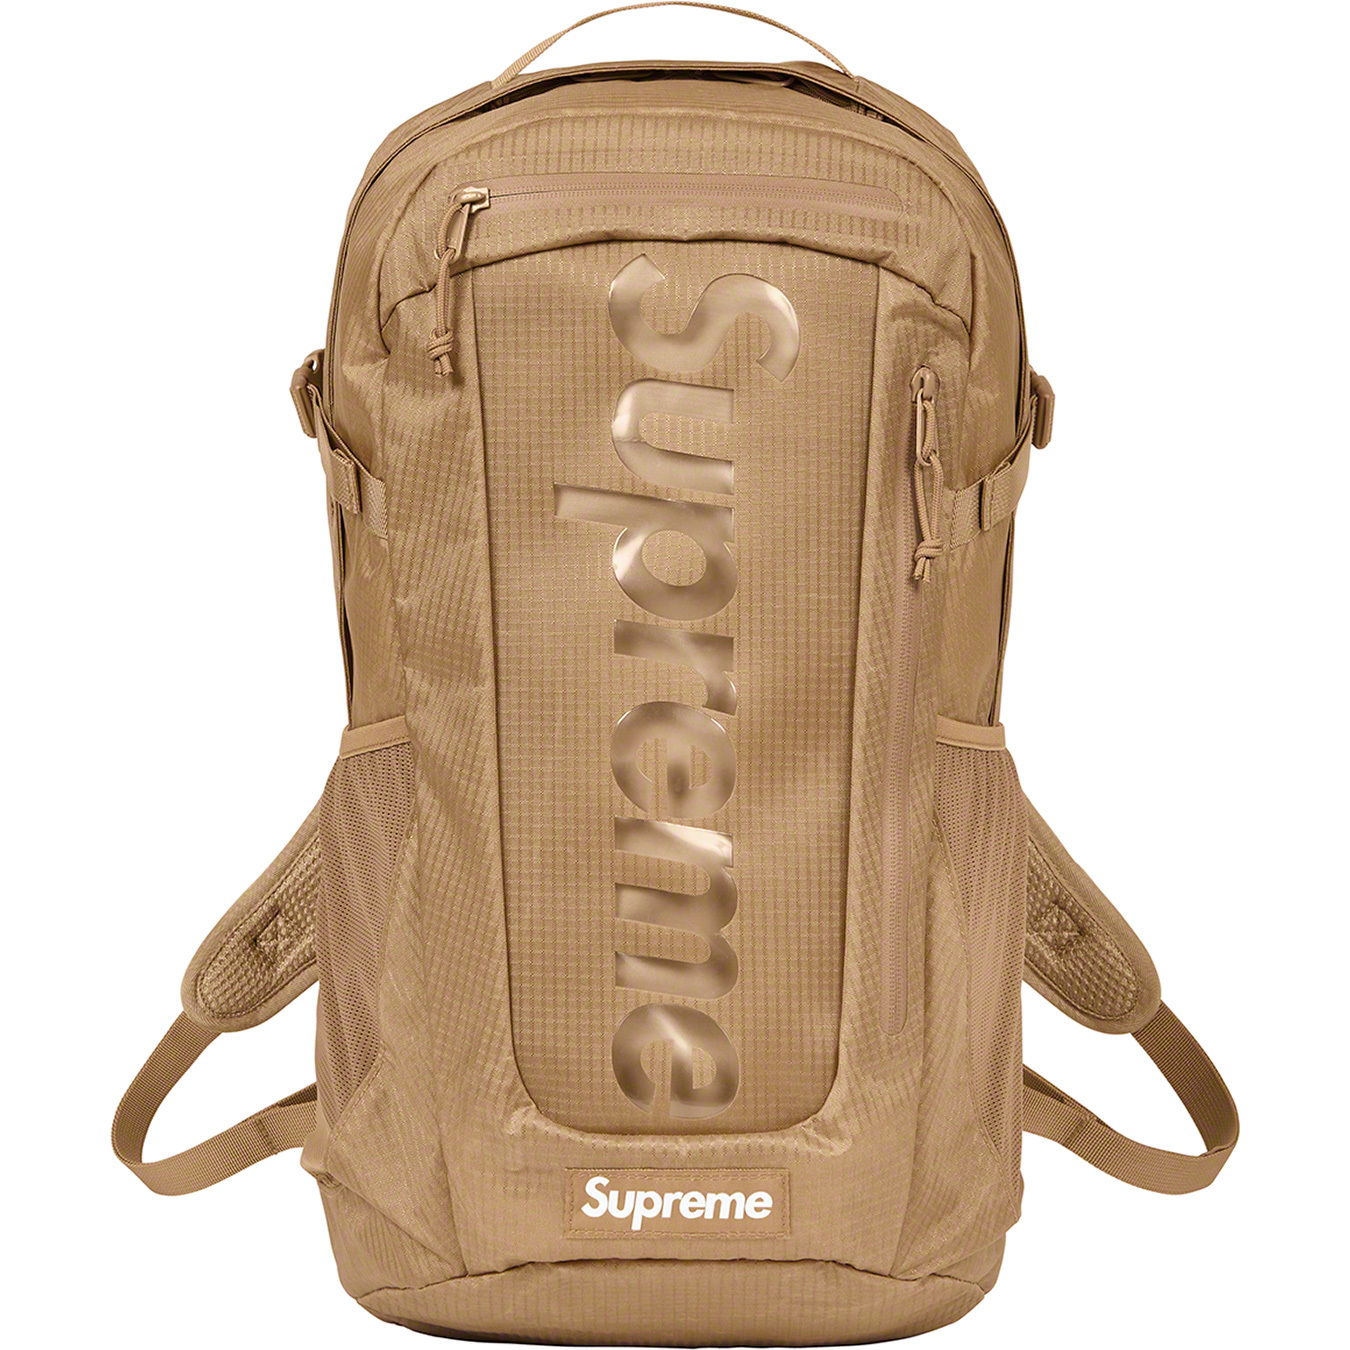 Supreme 2021 Backpack - Black Backpacks, Bags - WSPME65485